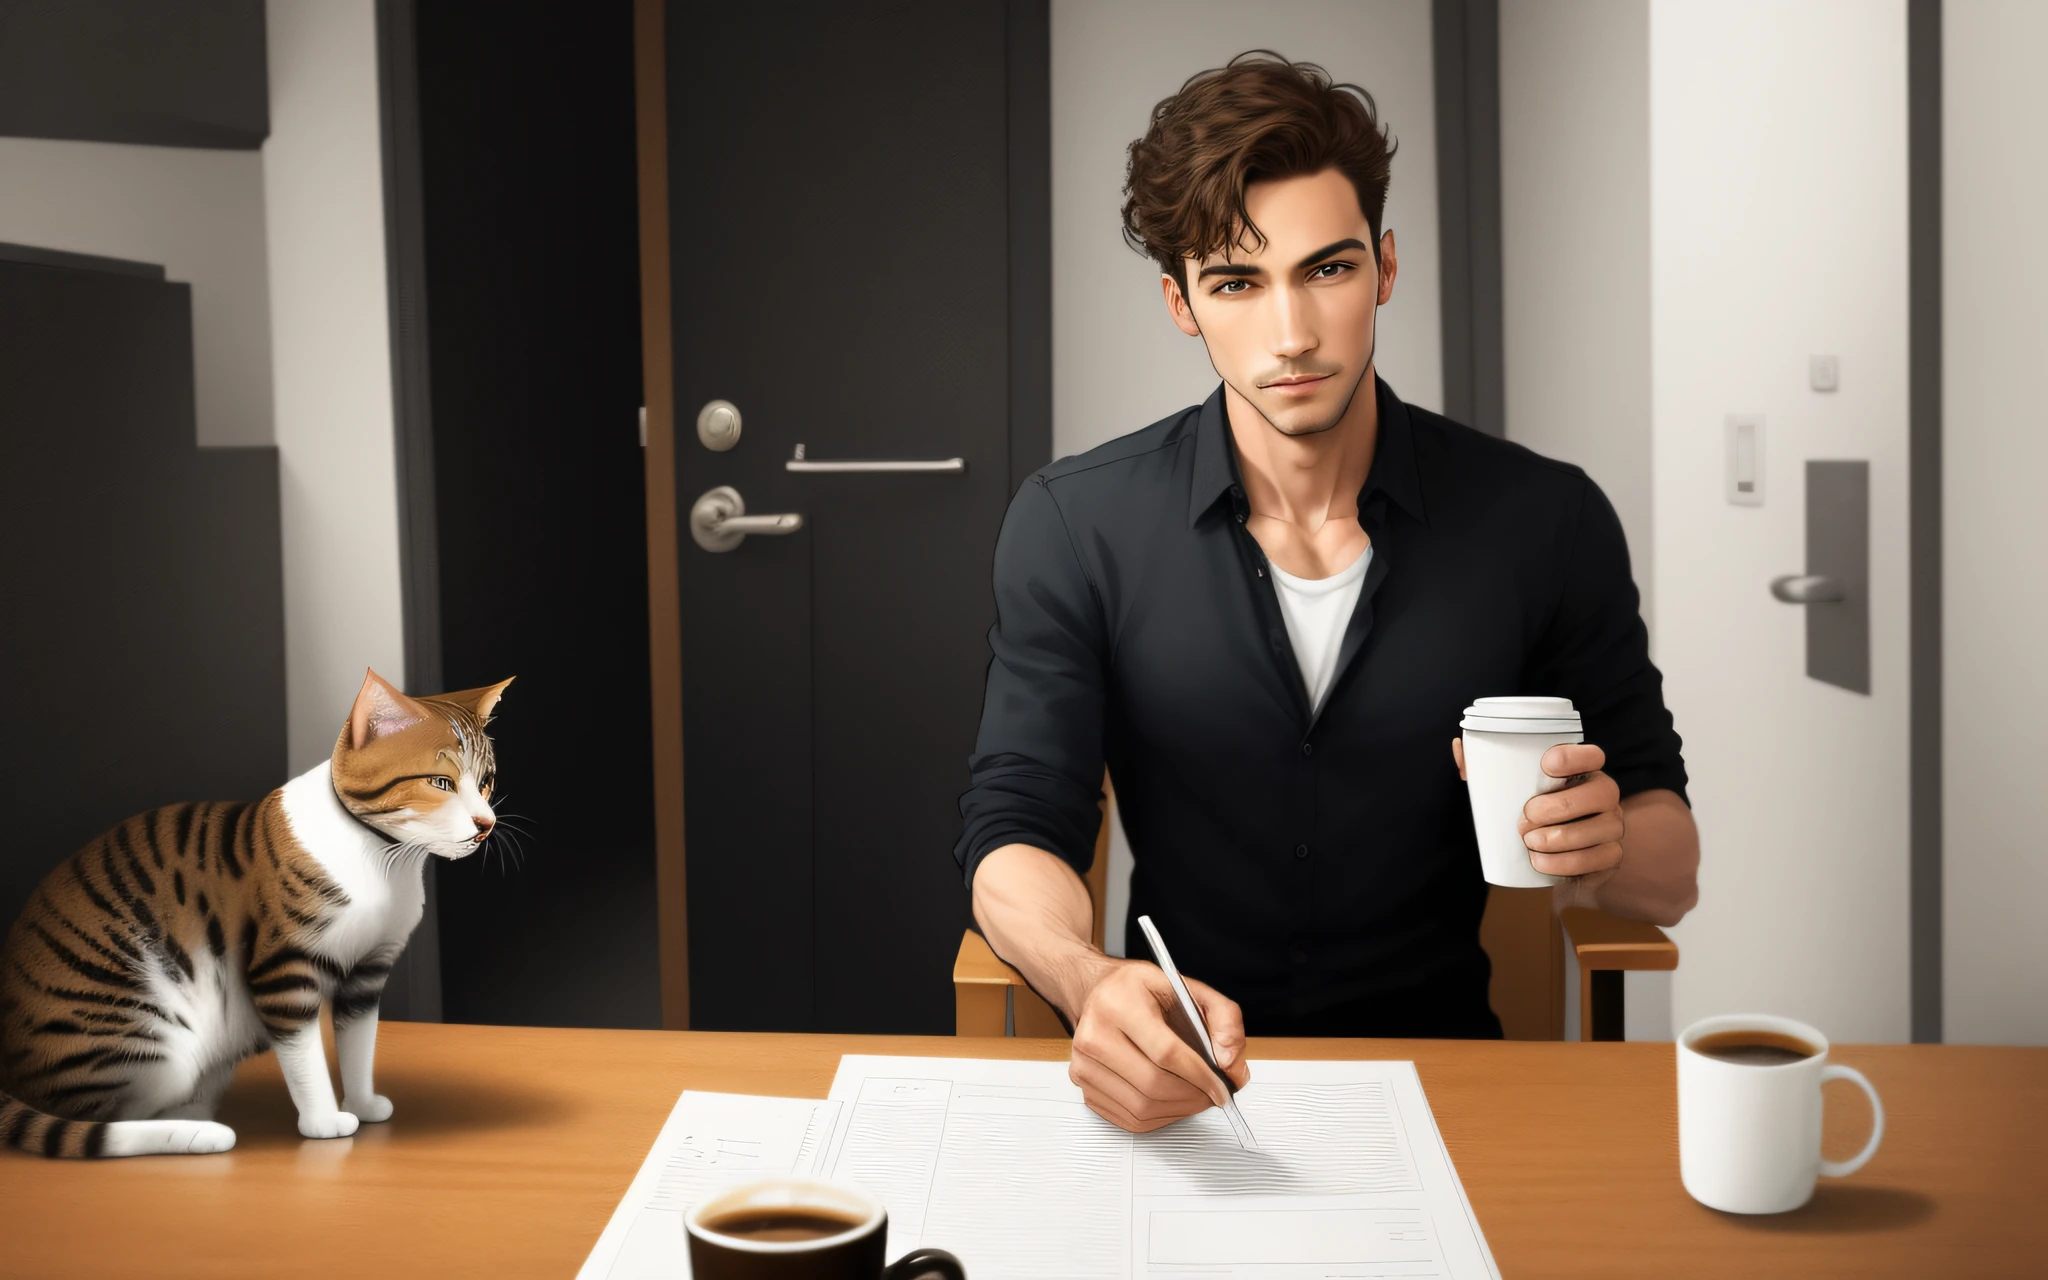 um completo-homem encorpado andando ereto,  holding a cup of coffee, a cat following the same direction as man, estilo dos desenhos animados,  apenas um homem. Imagem real realista detalhada.